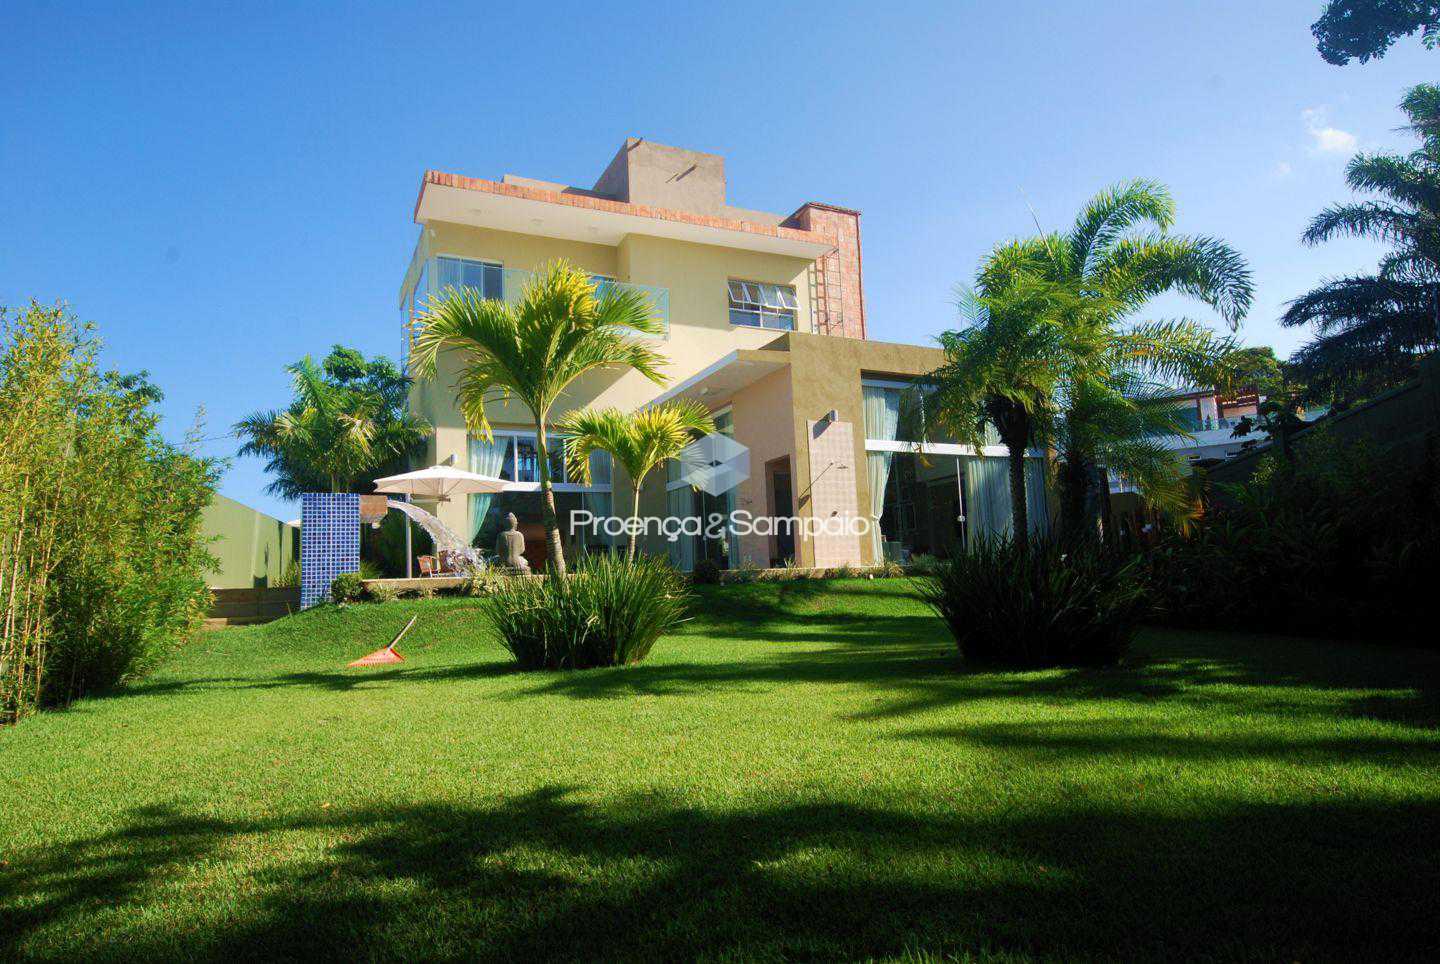 FOTO4 - Casa em Condomínio 4 quartos à venda Camaçari,BA - R$ 1.950.000 - PSCN40026 - 6